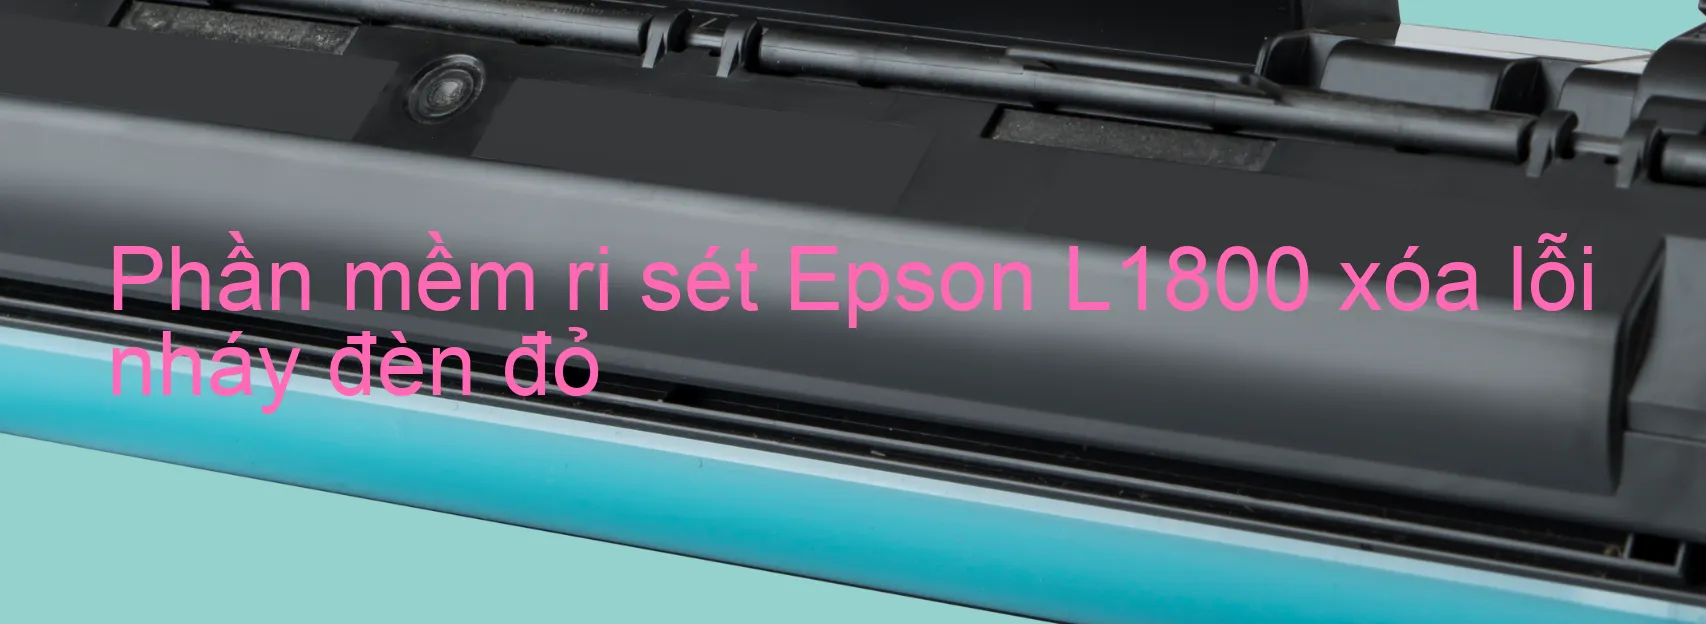 Phần mềm reset Epson L1800 xóa lỗi nháy đèn đỏ